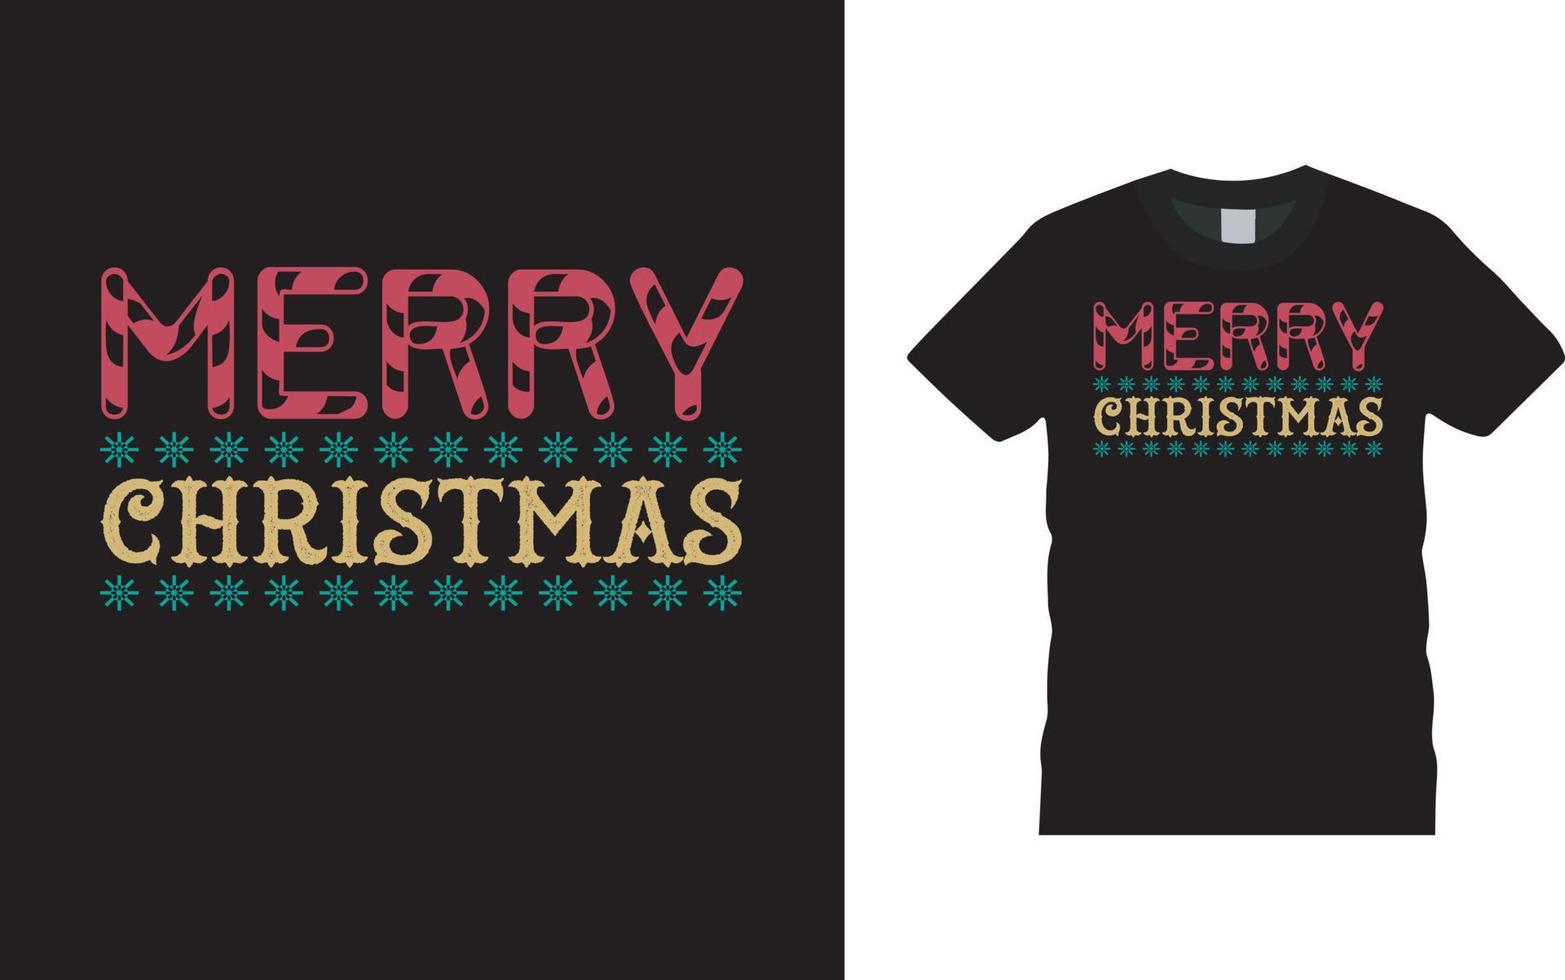 vrolijk kerst t-shirt ontwerp vector